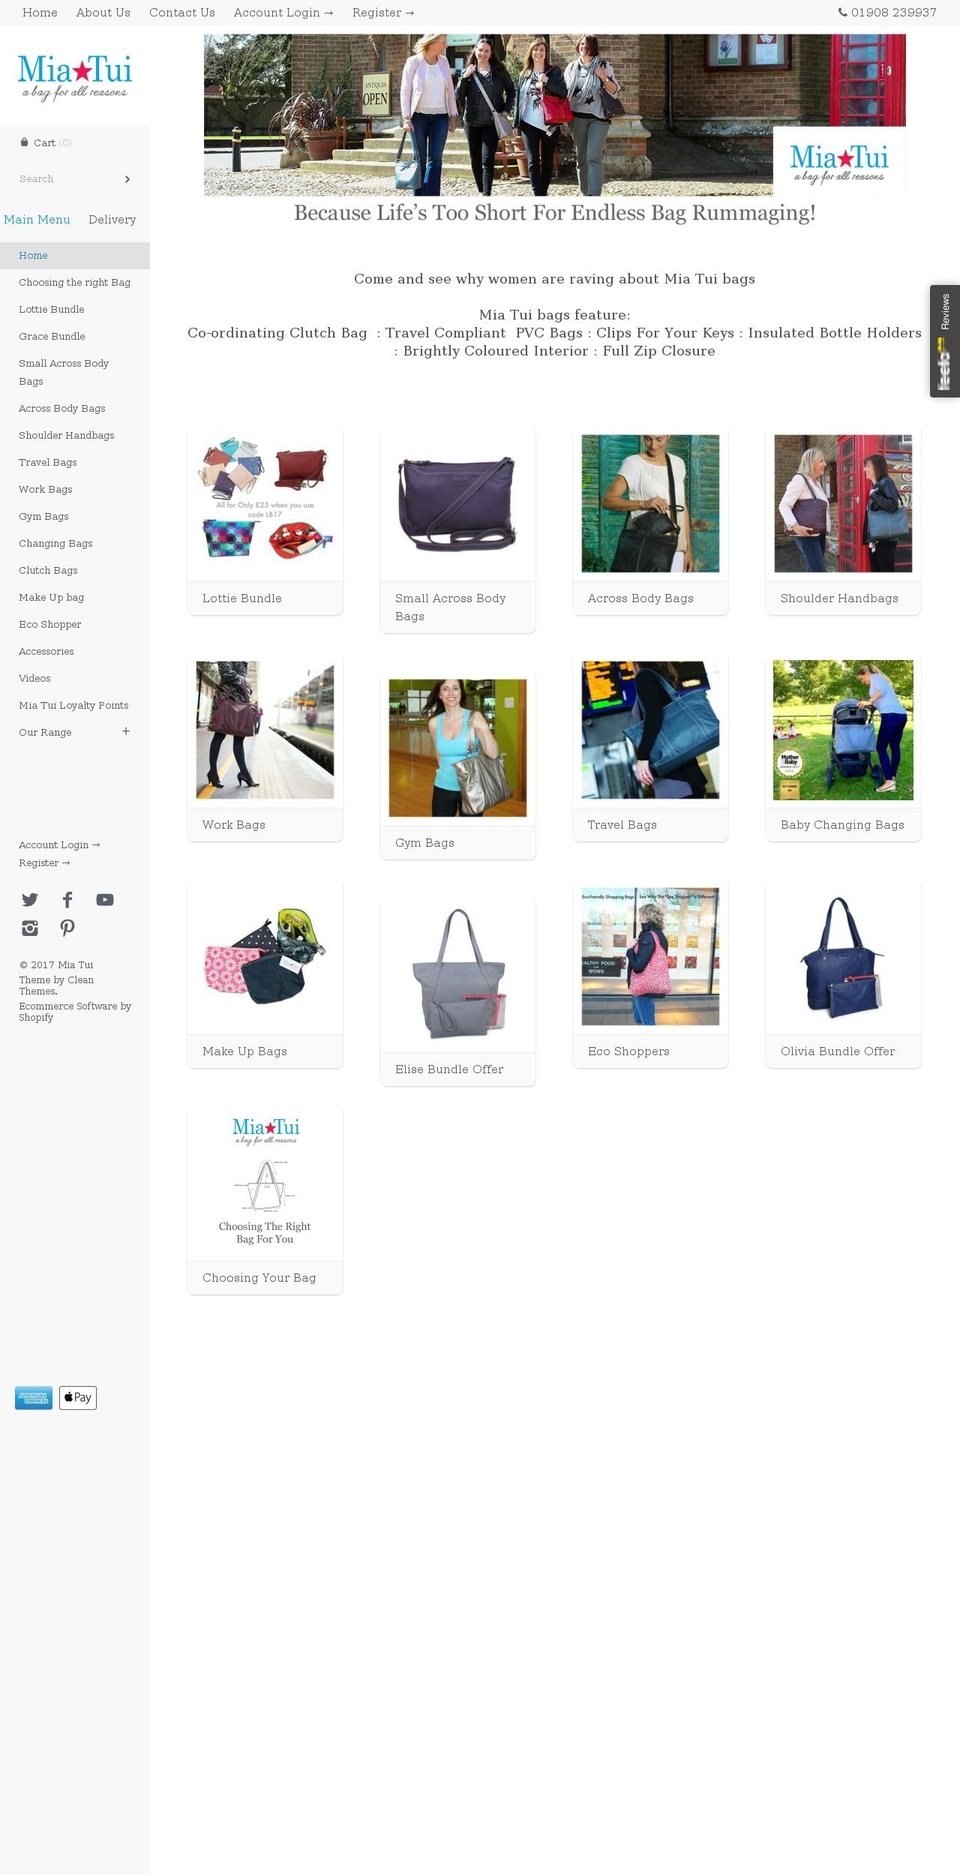 miatui.com shopify website screenshot